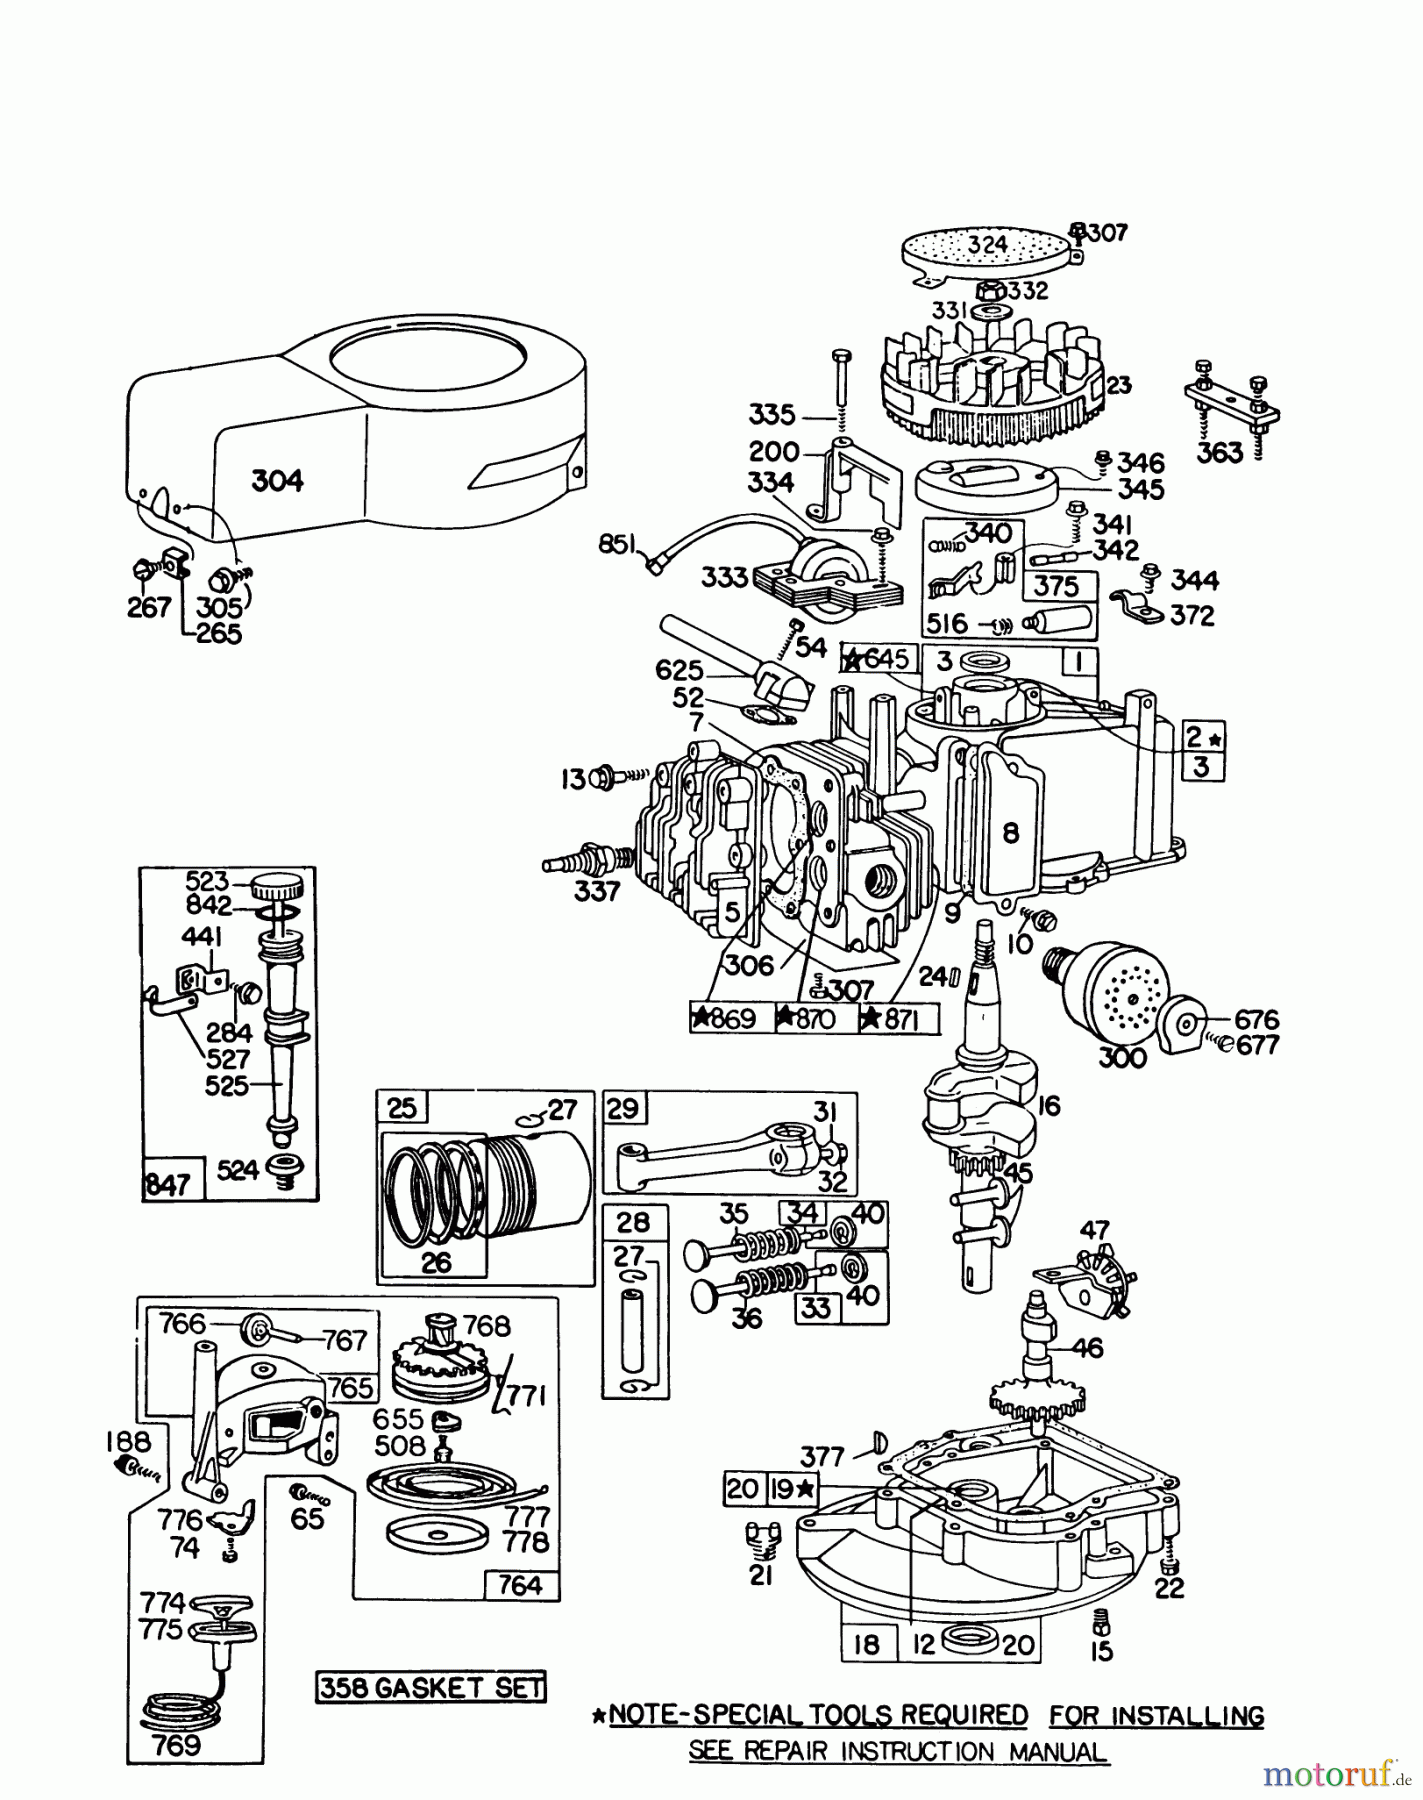  Toro Neu Mowers, Walk-Behind Seite 1 16155 - Toro Whirlwind II Lawnmower, 1979 (9000001-9999999) ENGINE BRIGGS & STRATTON MODEL 92908-1842-01 FOR 21